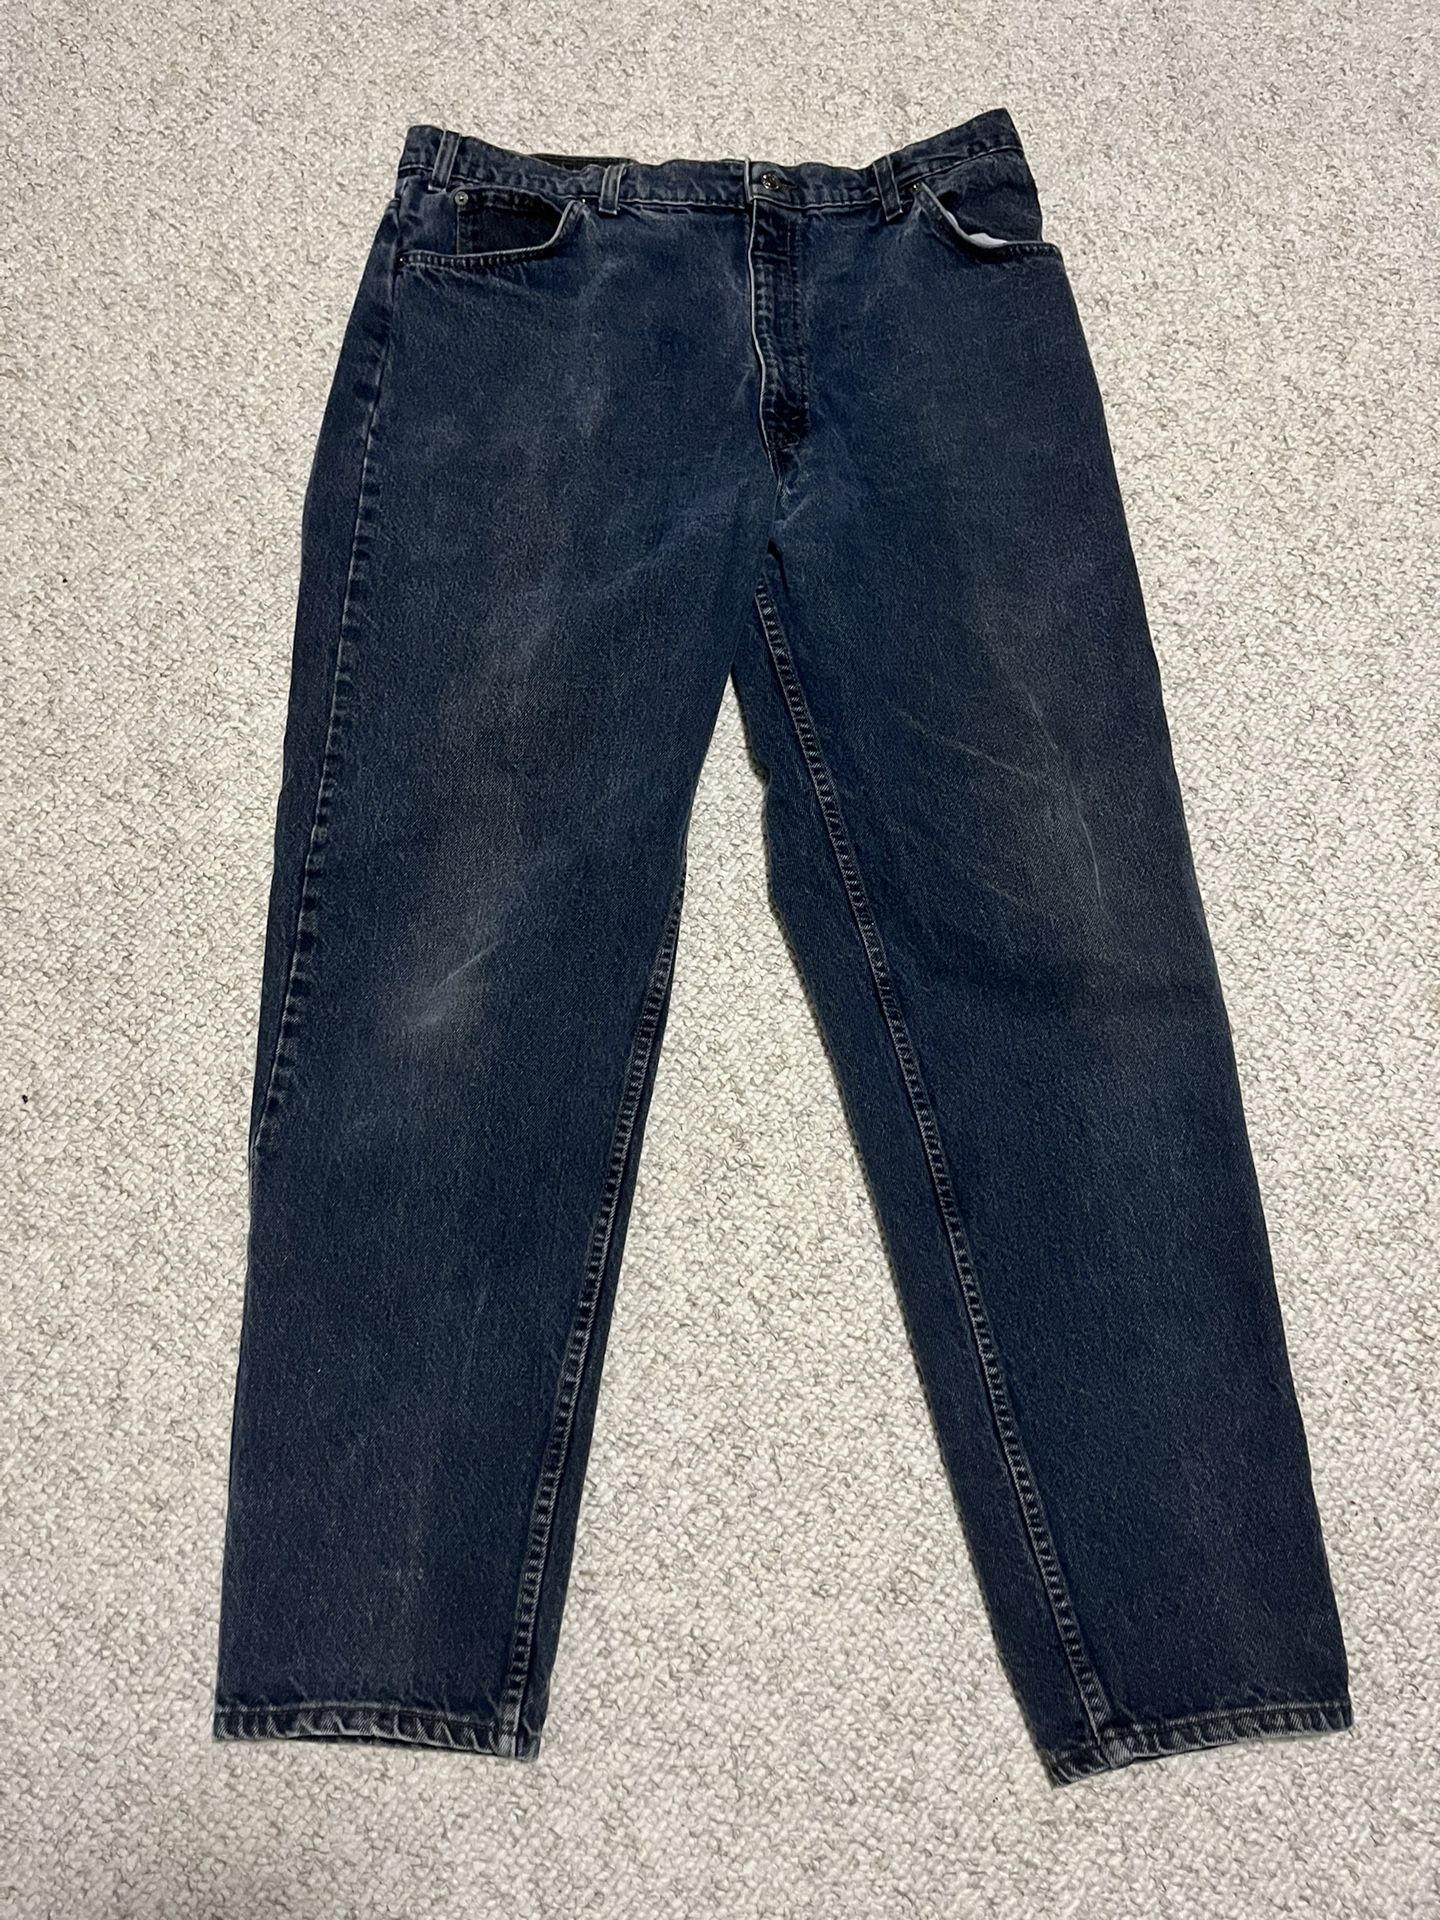 Levi’s 550  Men’s Jeans